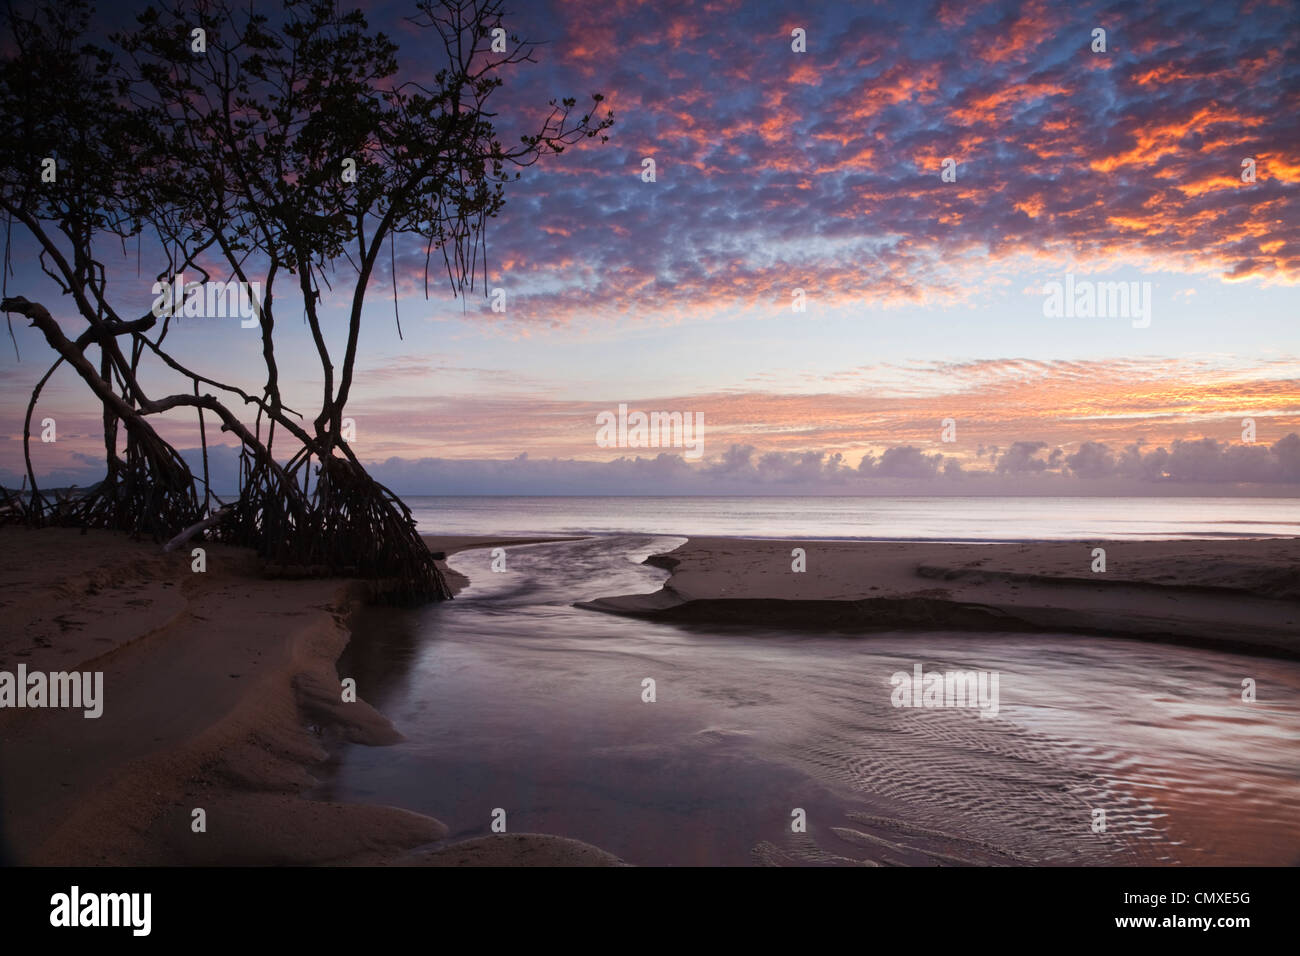 Mangrove trees on beach at dawn. Kewarra Beach, Cairns, Queensland, Australia Stock Photo